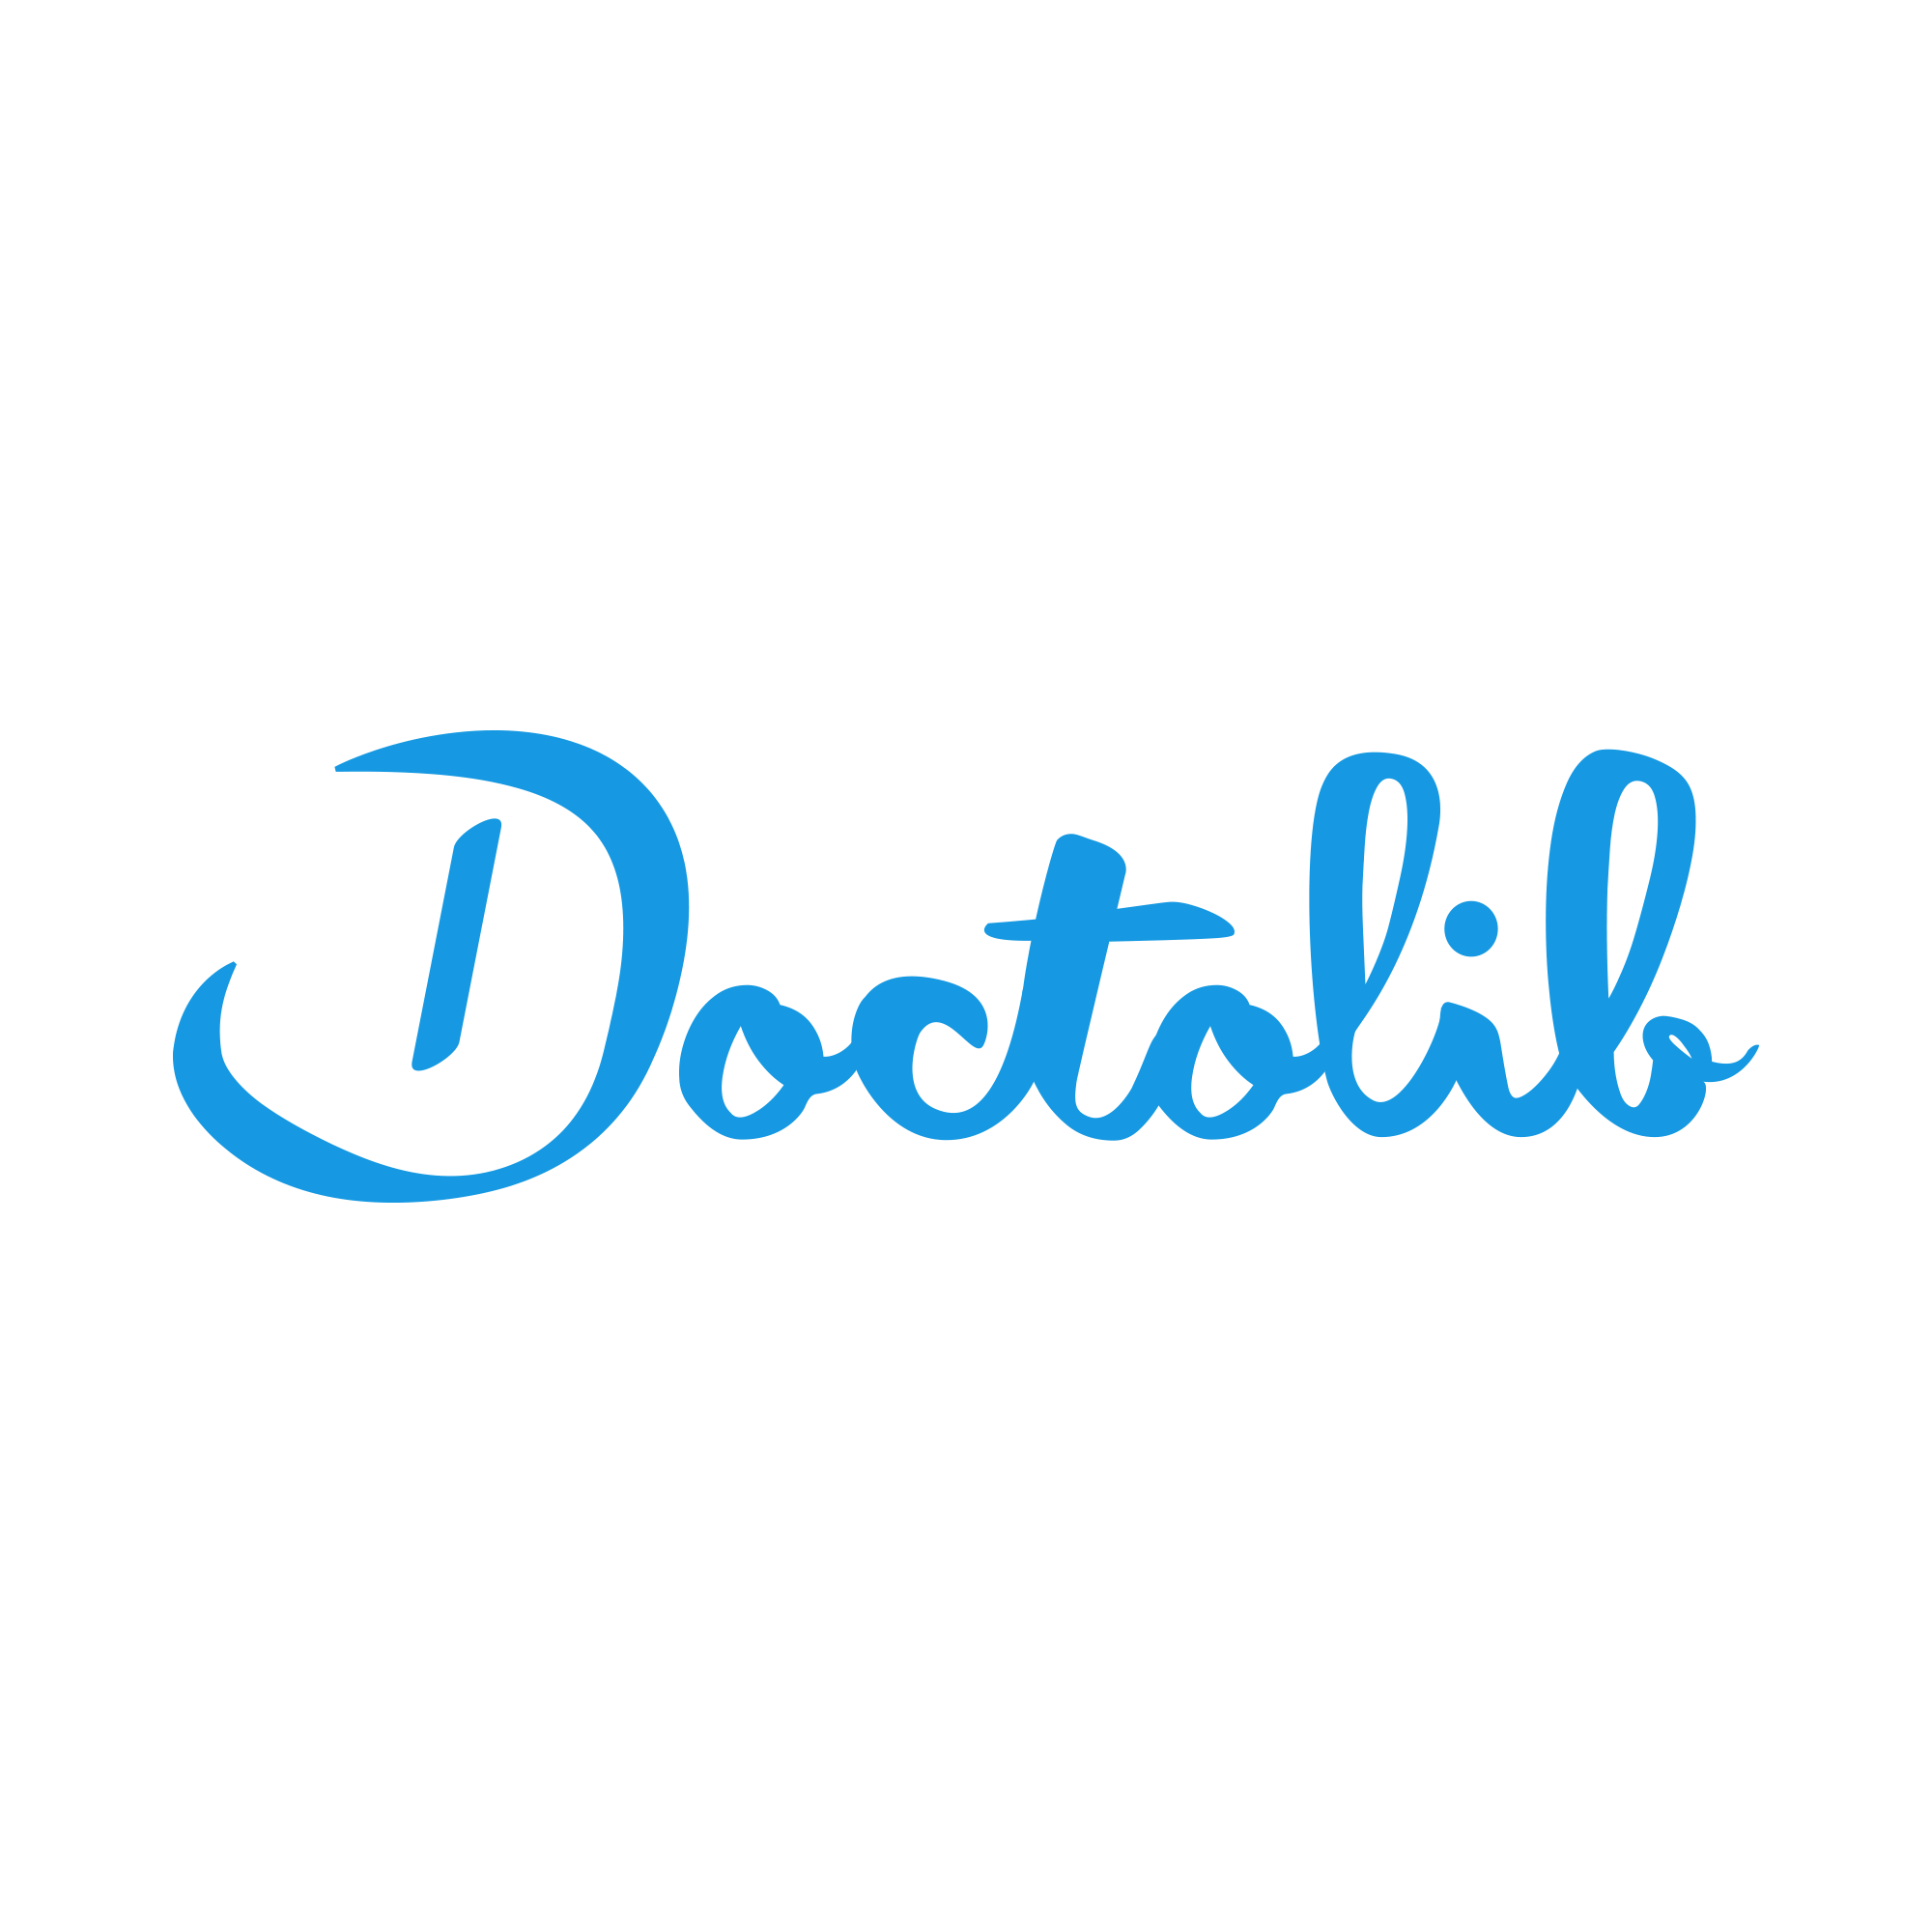 Logo-doctolib-bleu-tr